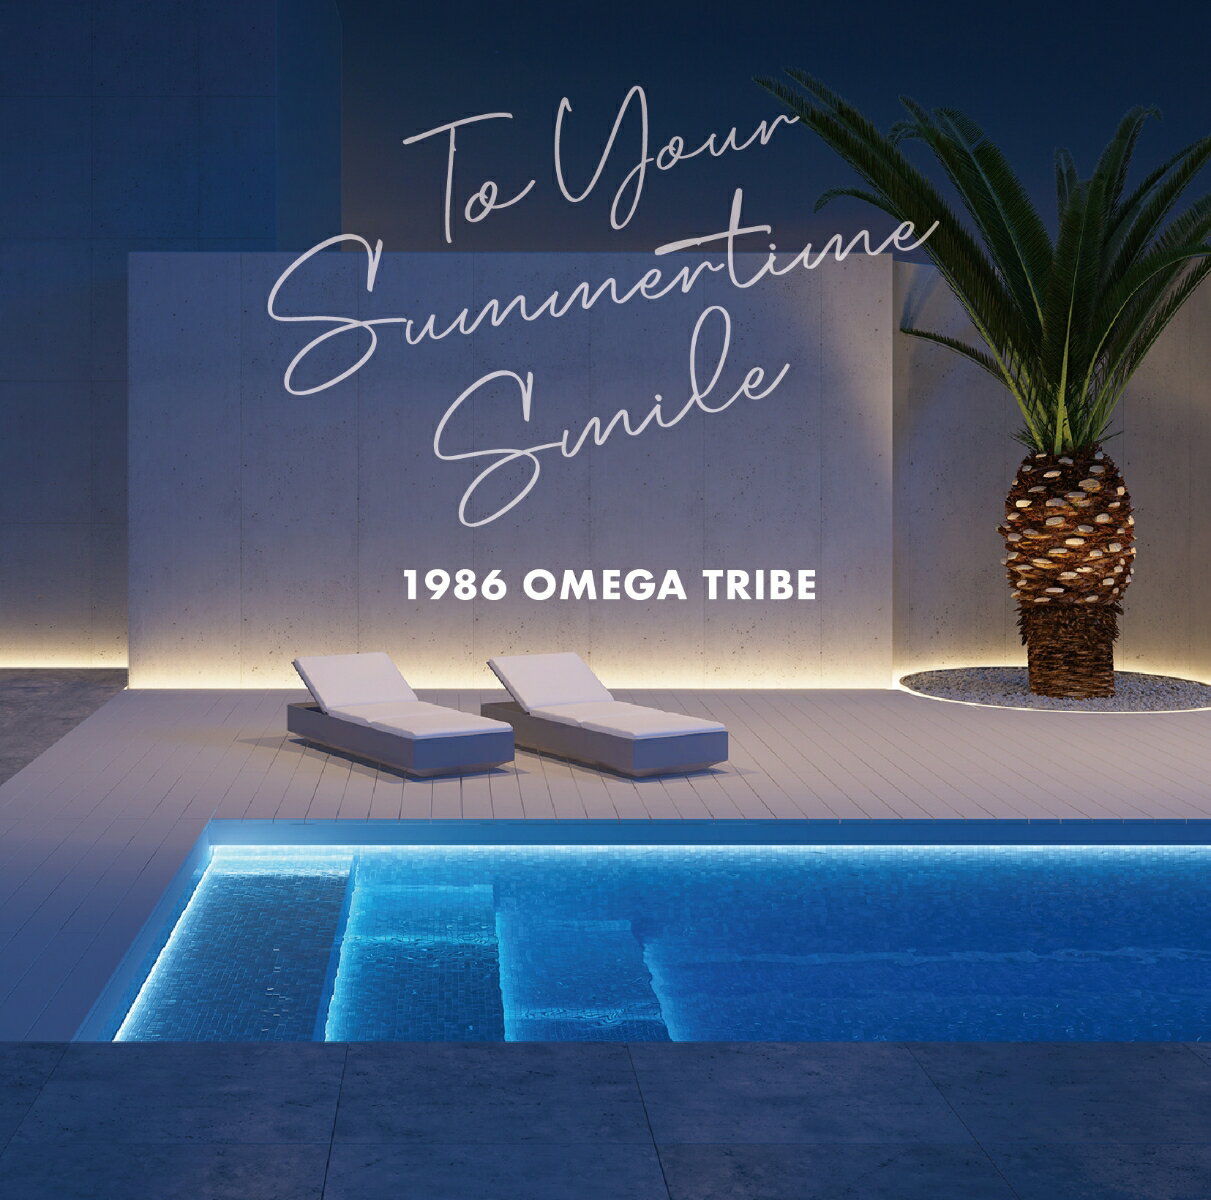 邦楽, ロック・ポップス 1986 OMEGA TRIBE 35th Anniversary Album To Your Summertime Smile 1986 OMEGA TRIBE 